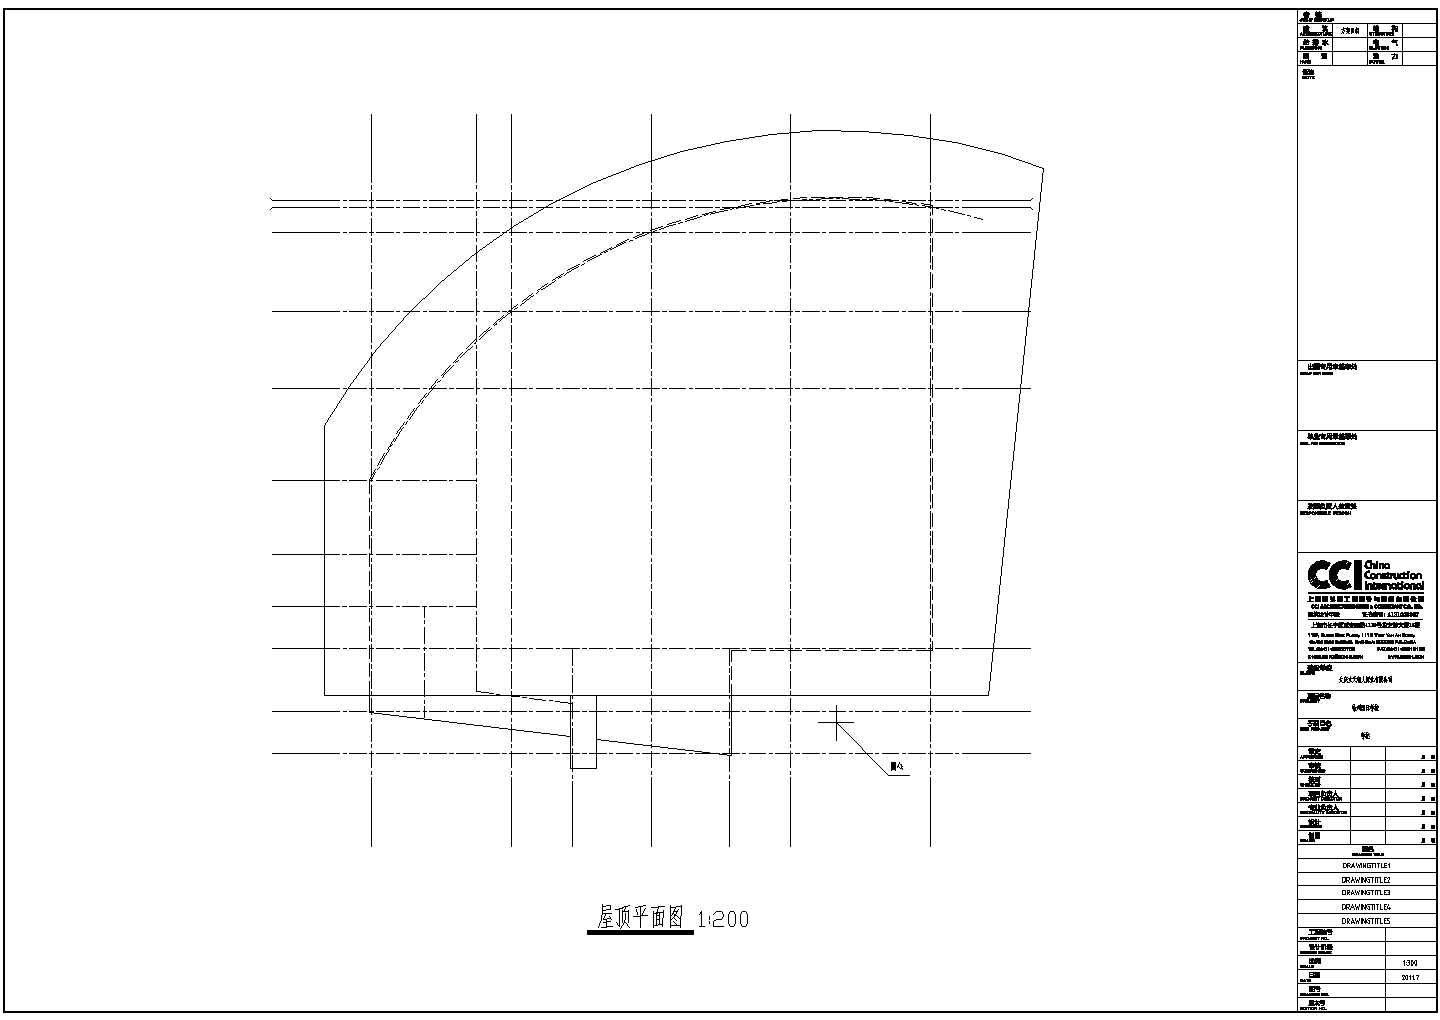 北京市某大学800平米单层框架结构学术报告厅建筑设计CAD图纸